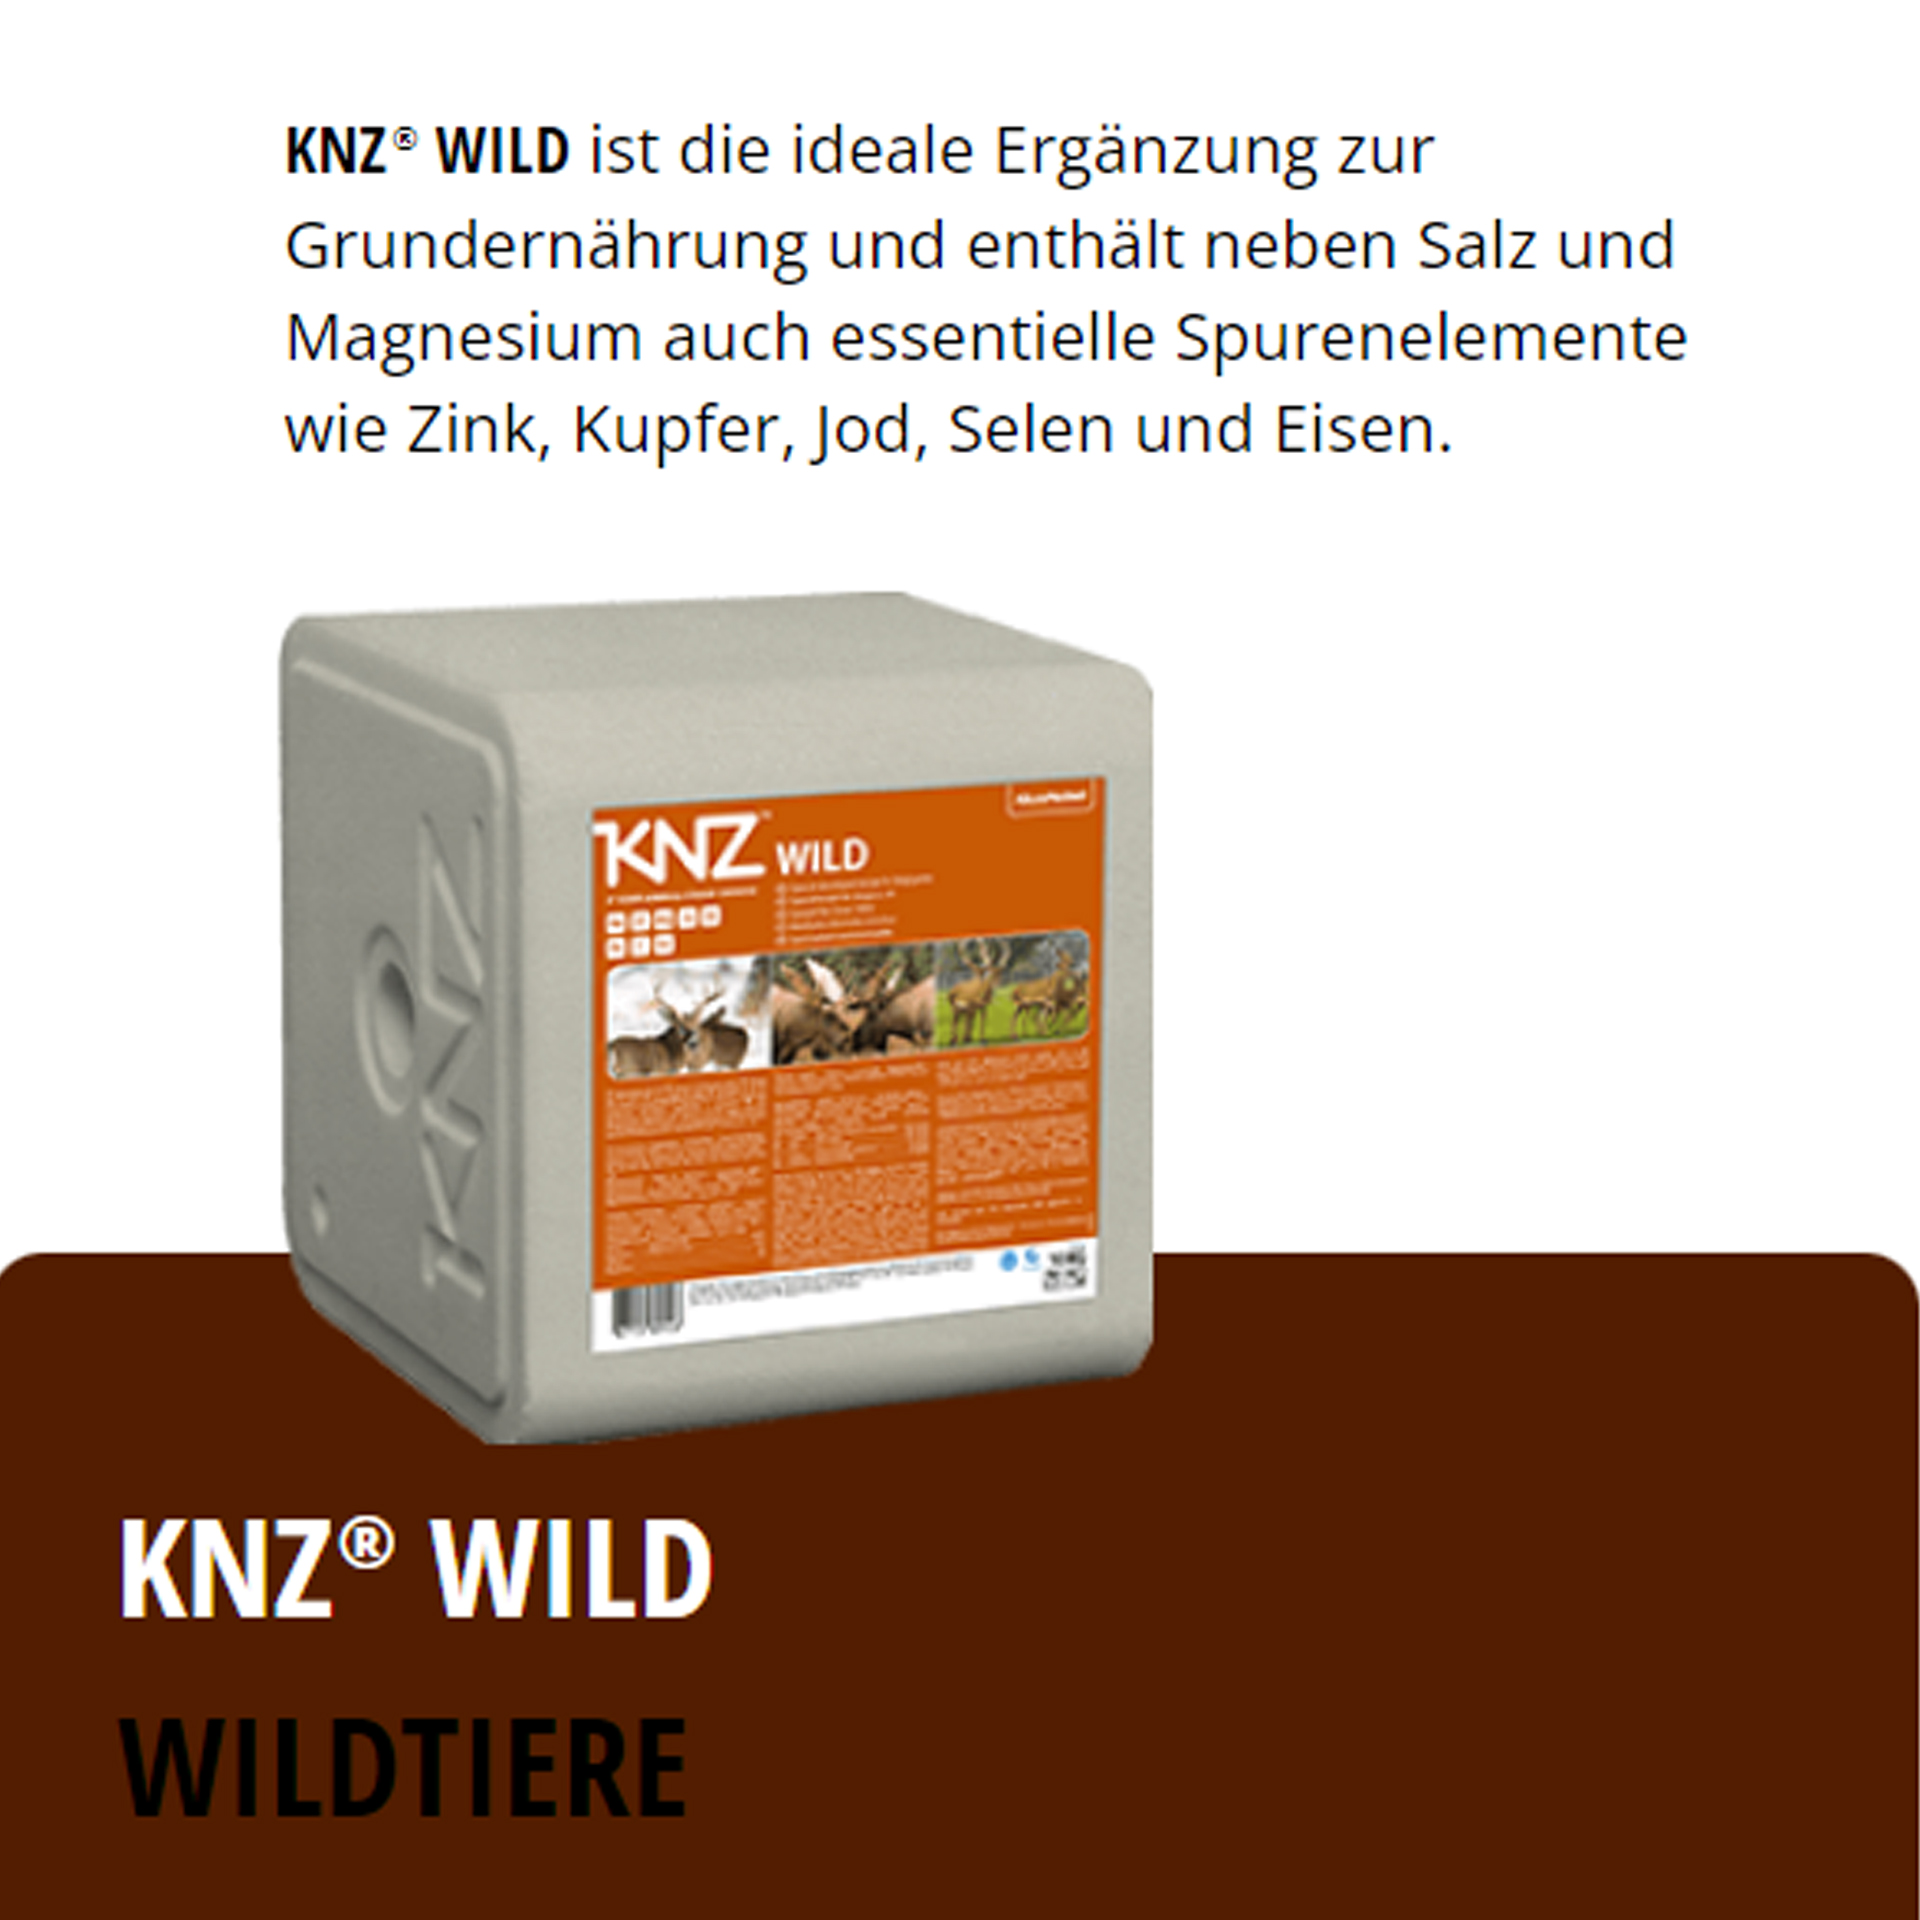 KNZ Wild 30 kg Salzlecksteine Wildtiere